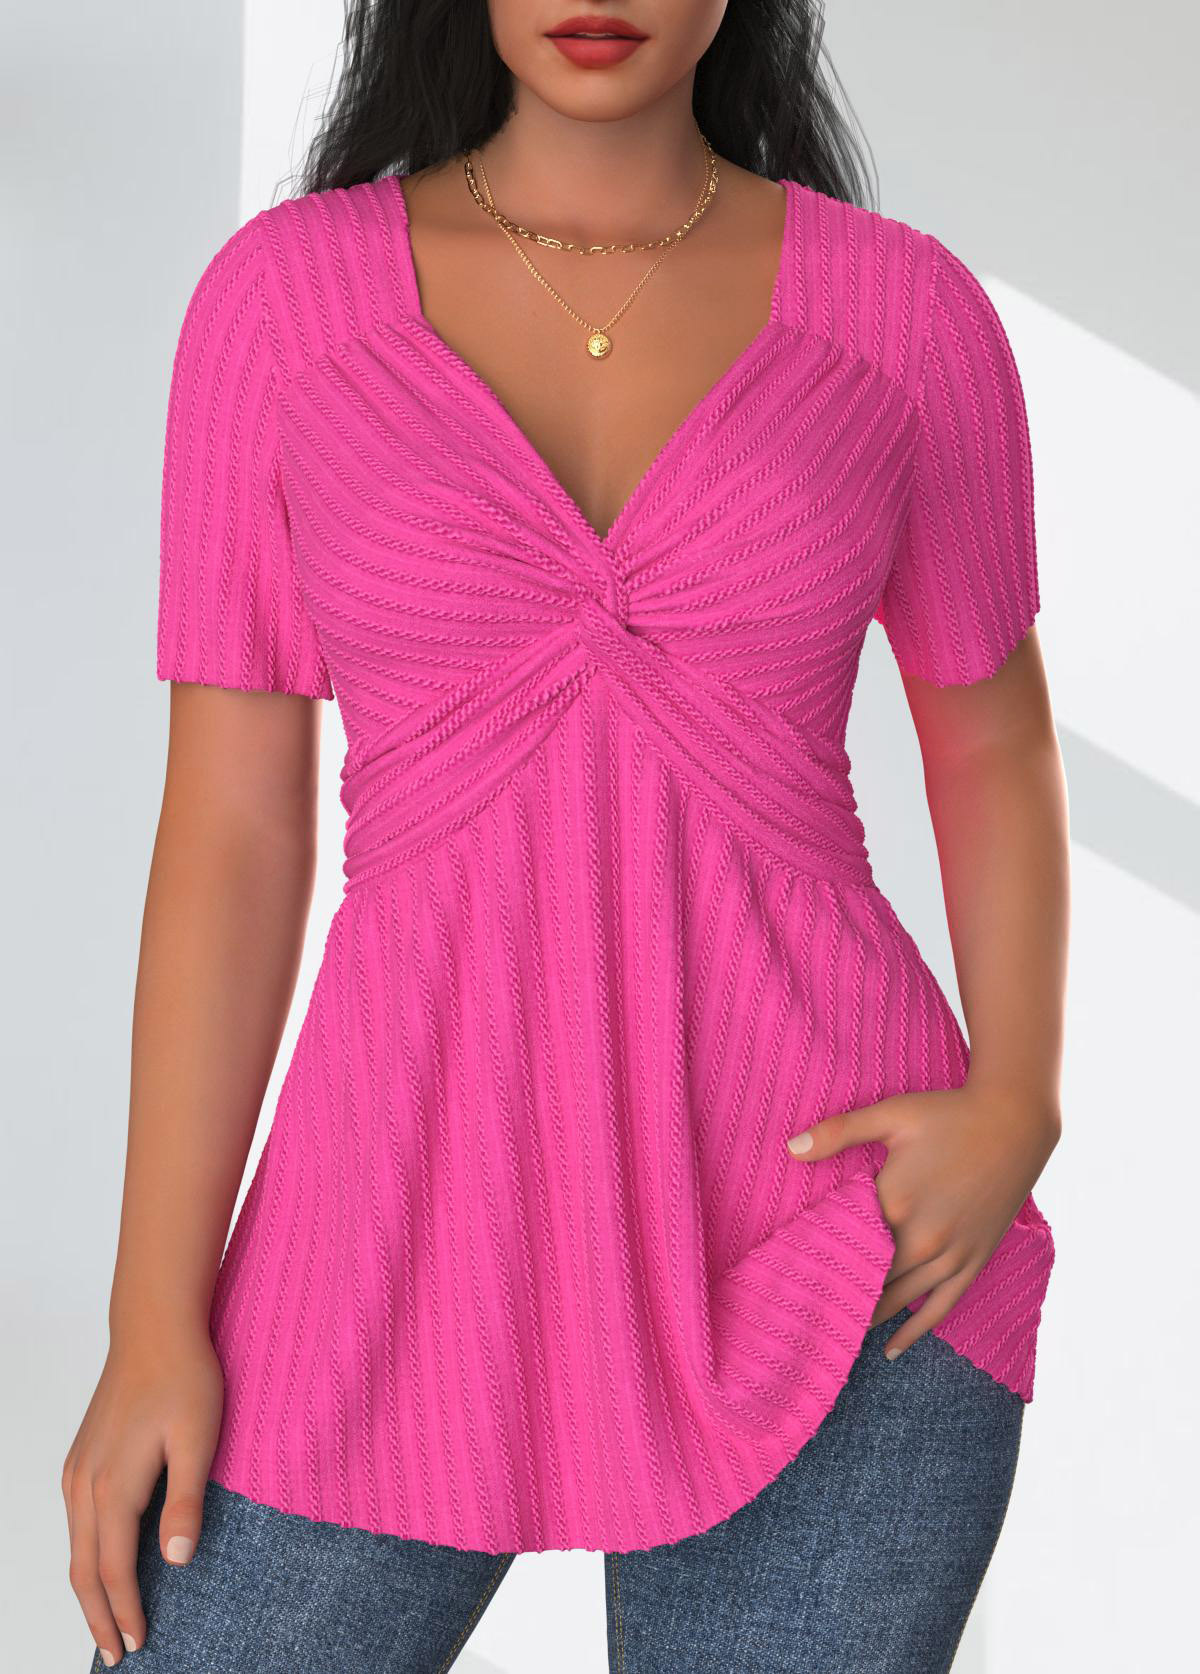 Hot Pink Textured Fabric Short Sleeve T Shirt